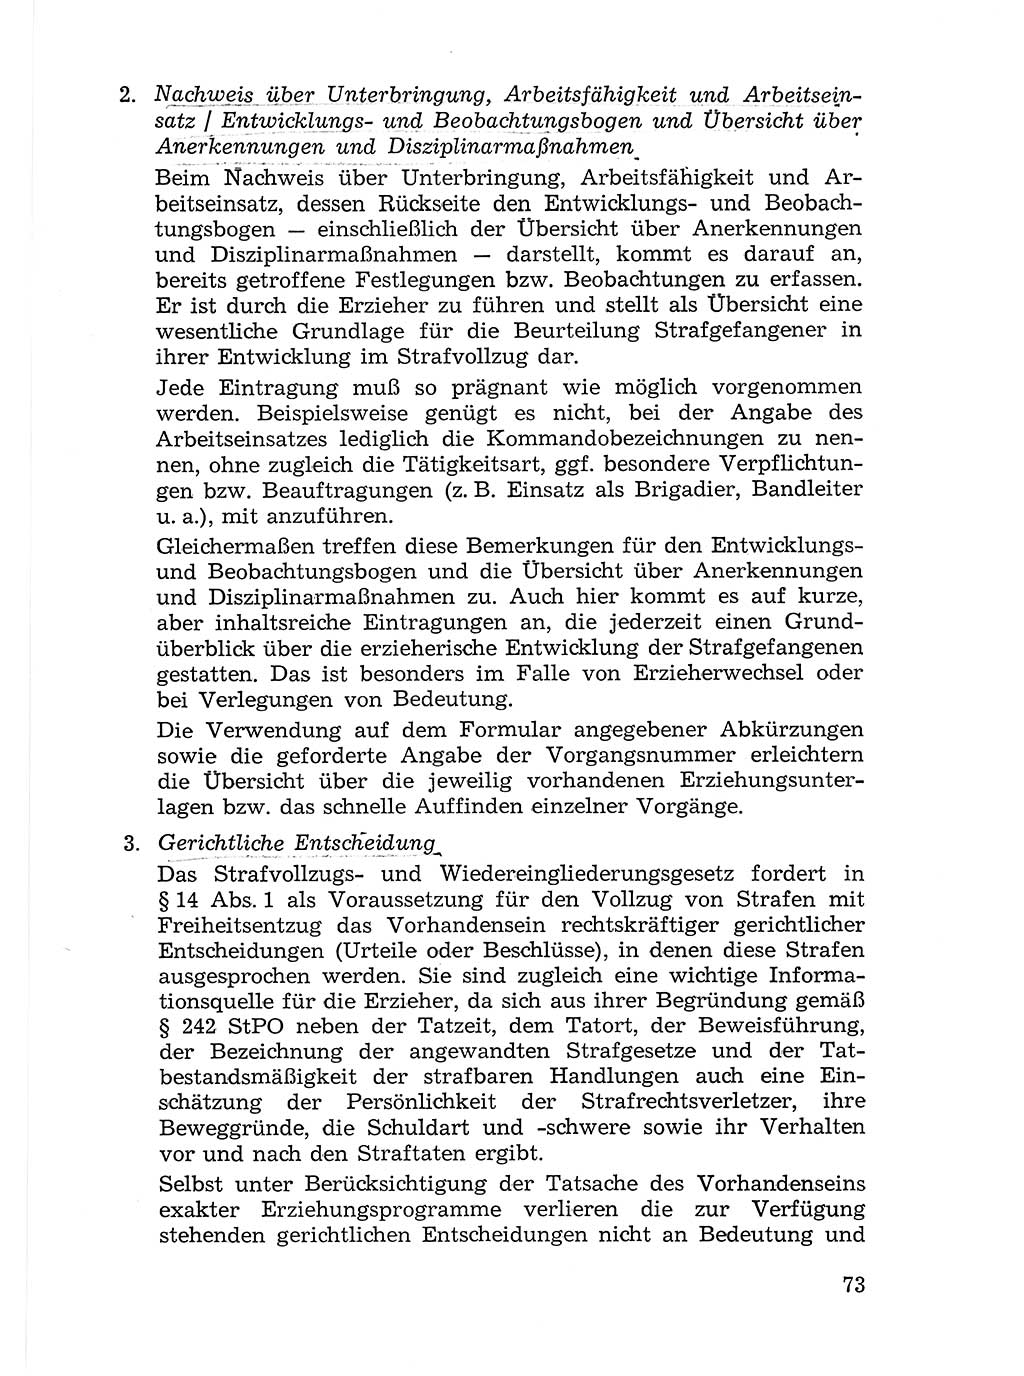 Sozialistischer Strafvollzug (SV) [Deutsche Demokratische Republik (DDR)] 1972, Seite 73 (Soz. SV DDR 1972, S. 73)